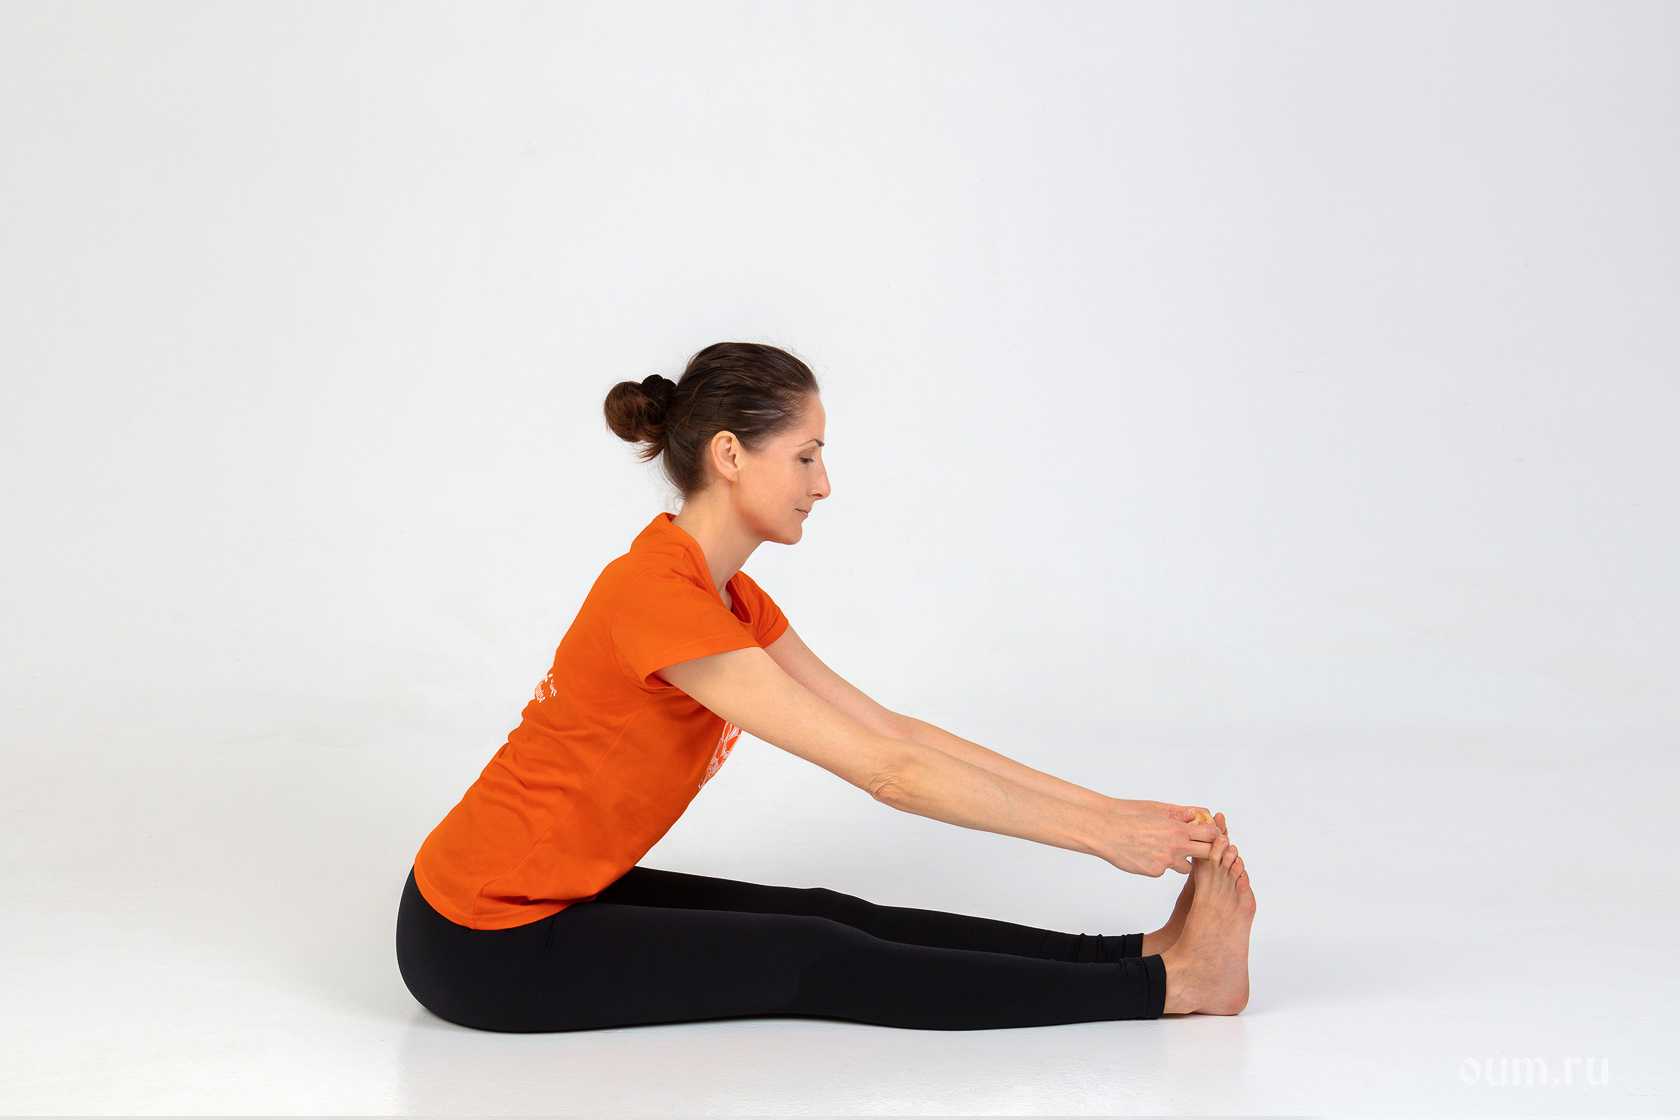 Пашчимоттанасана — поза растягивания спины или наклон вперед сидя